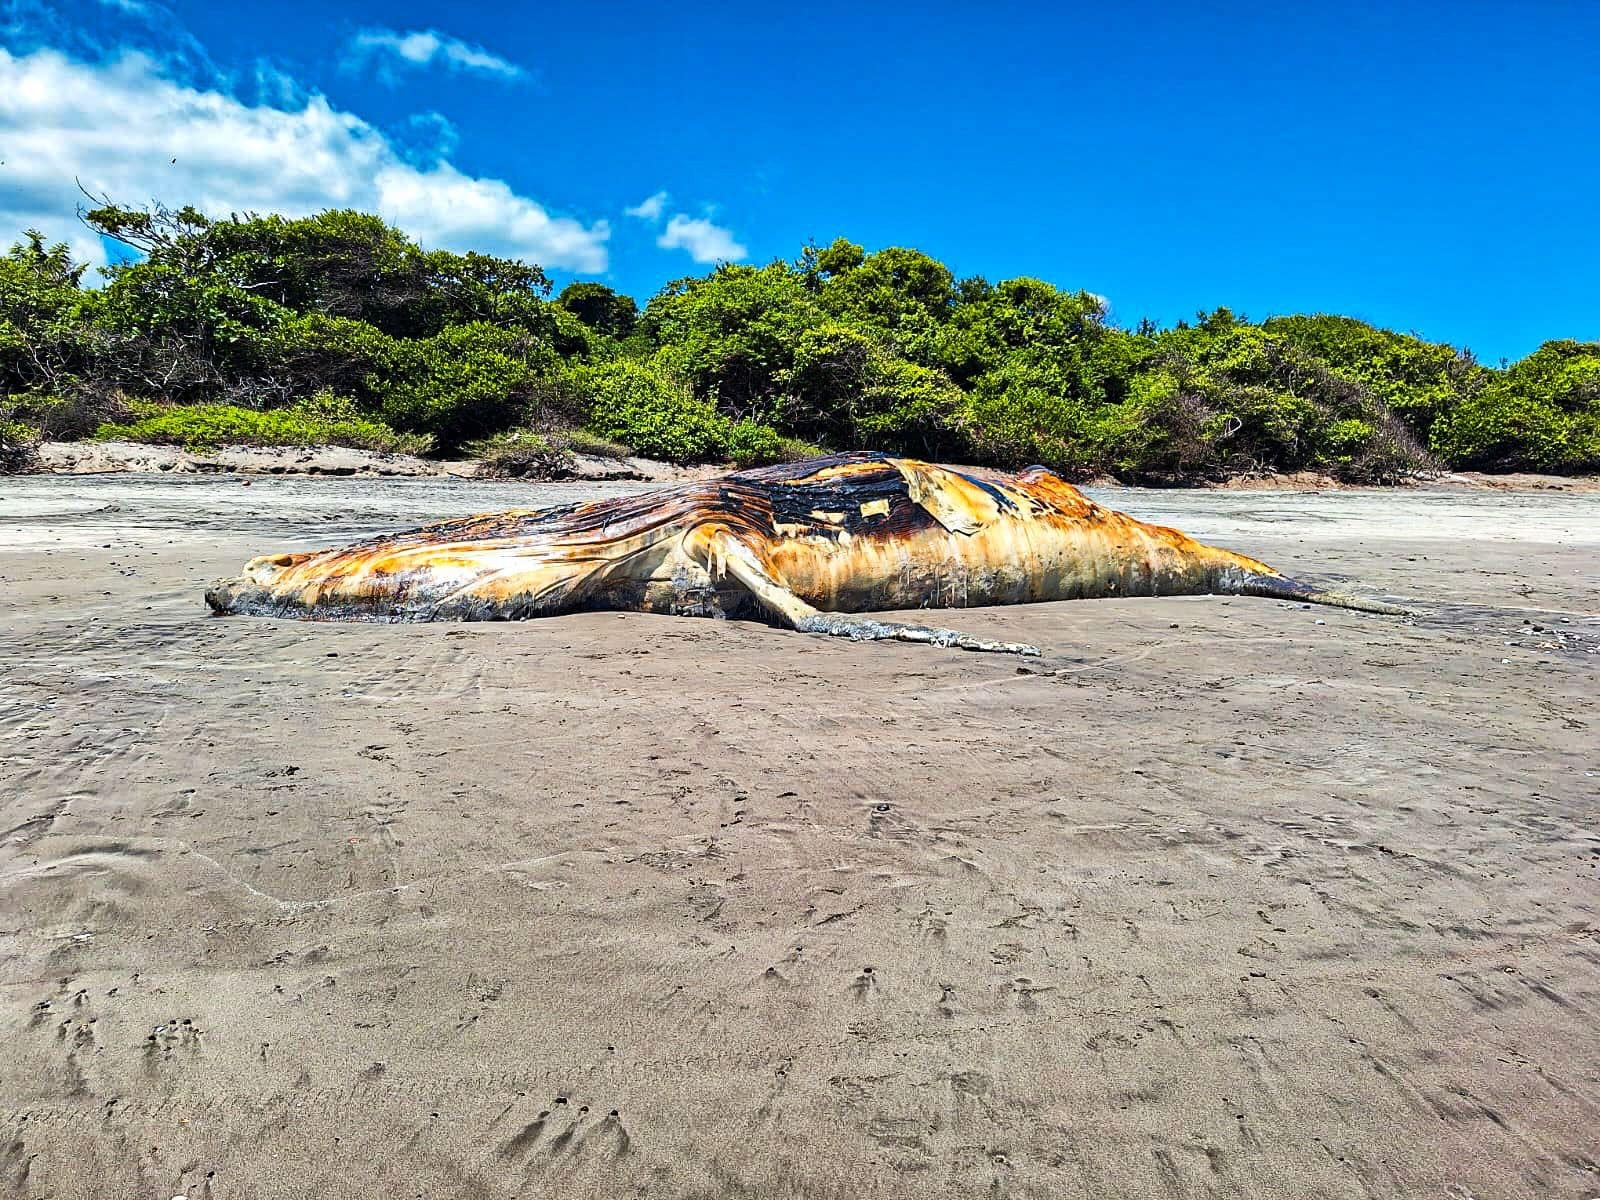 Pobladores de una playa en la costa del océano Pacífico de El Salvador encontraron muerta a una ballena jorobada de 15 metros, según informó el Ministerio de Medio Ambiente del país centroamericano. (Foto Prensa Libre: Ministerio de Ambiente El Salvador).